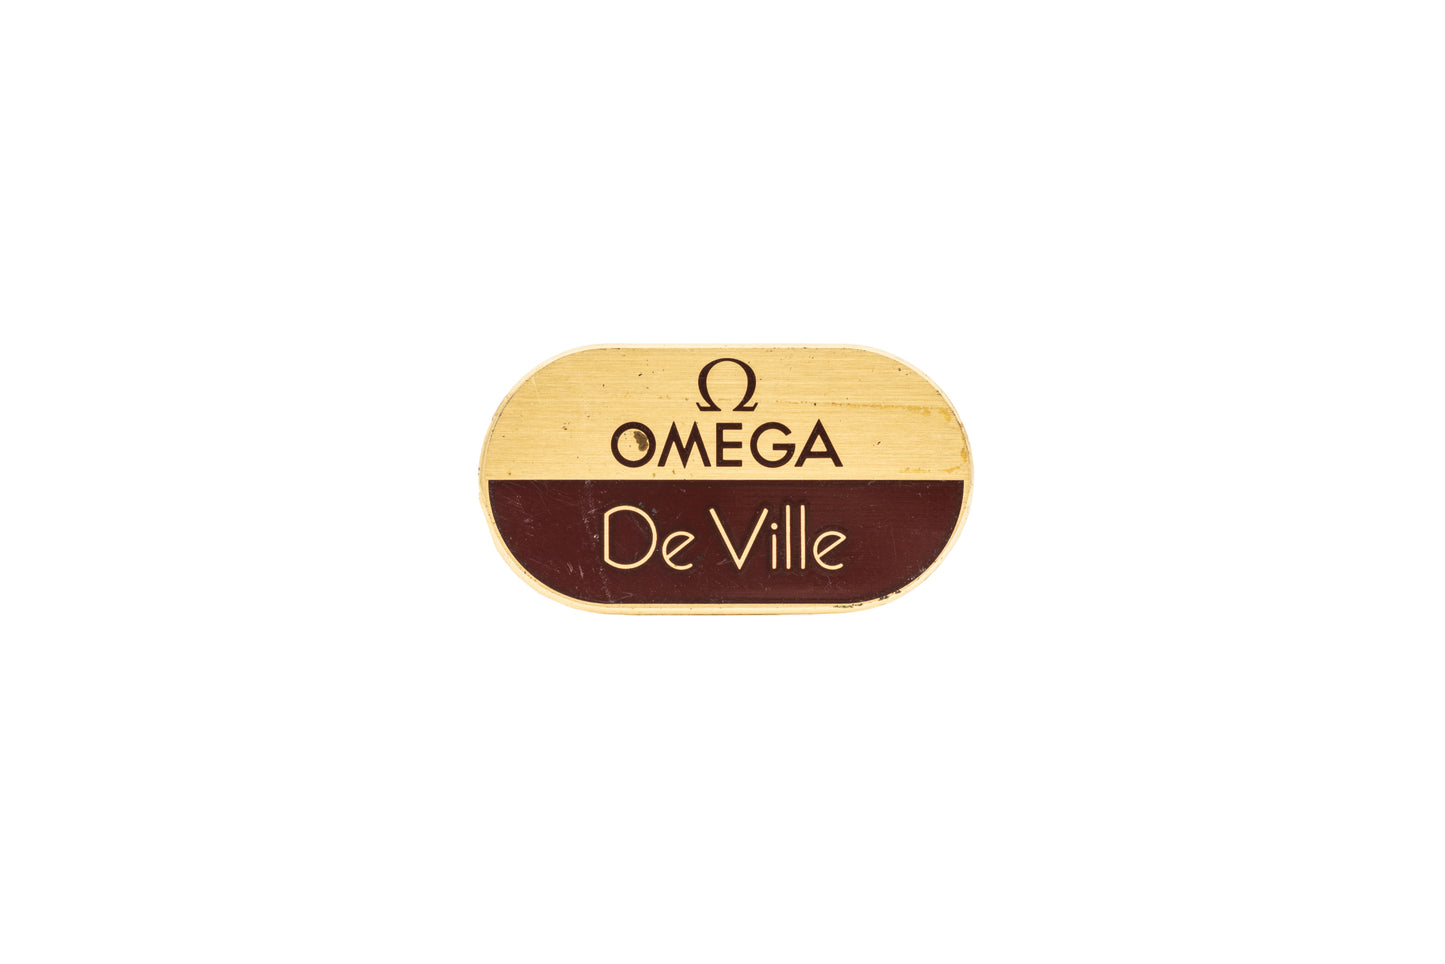 Omega De Ville Signage